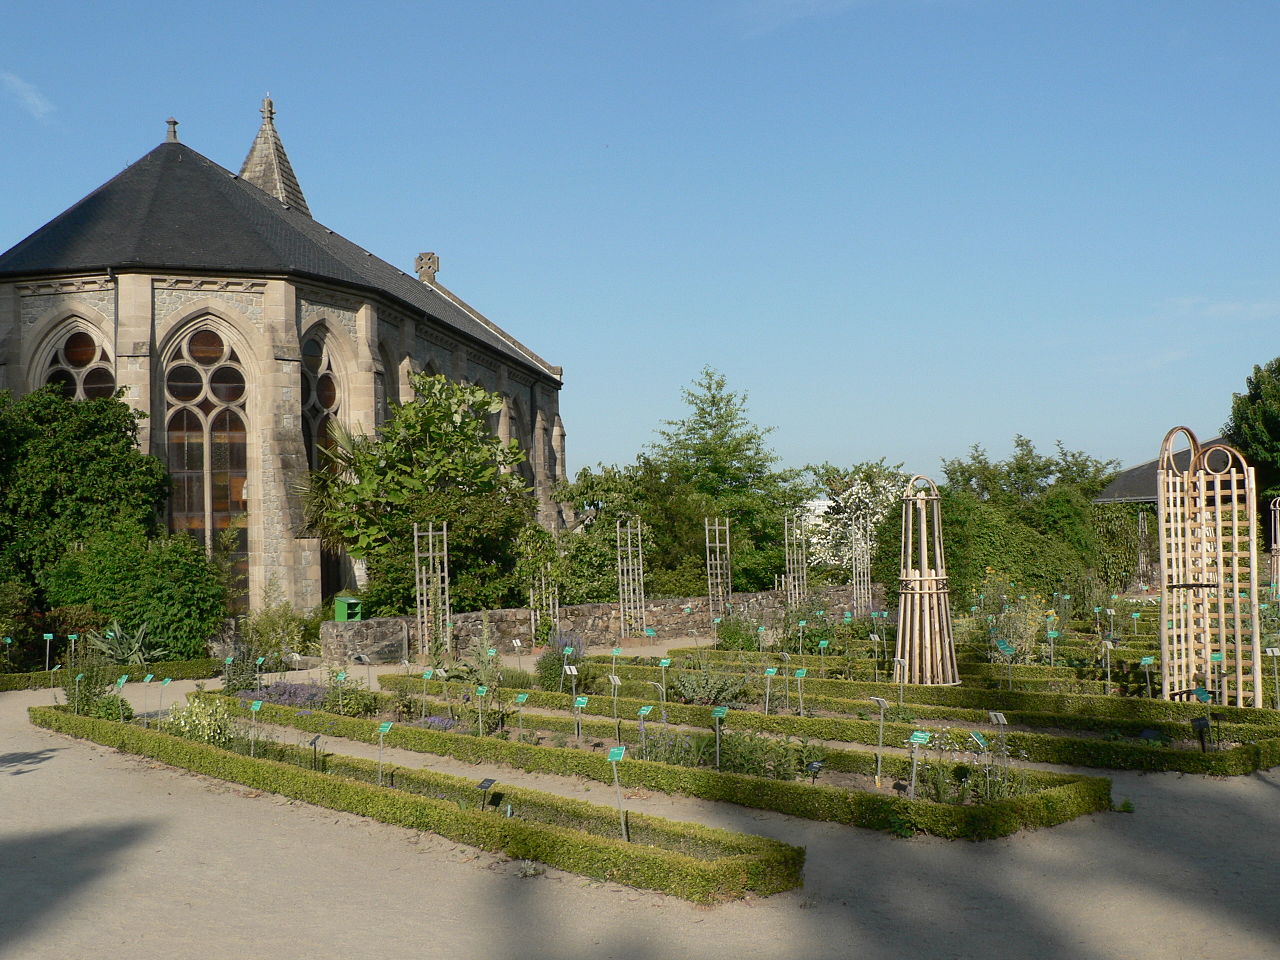 Arquebuse Botanical Garden